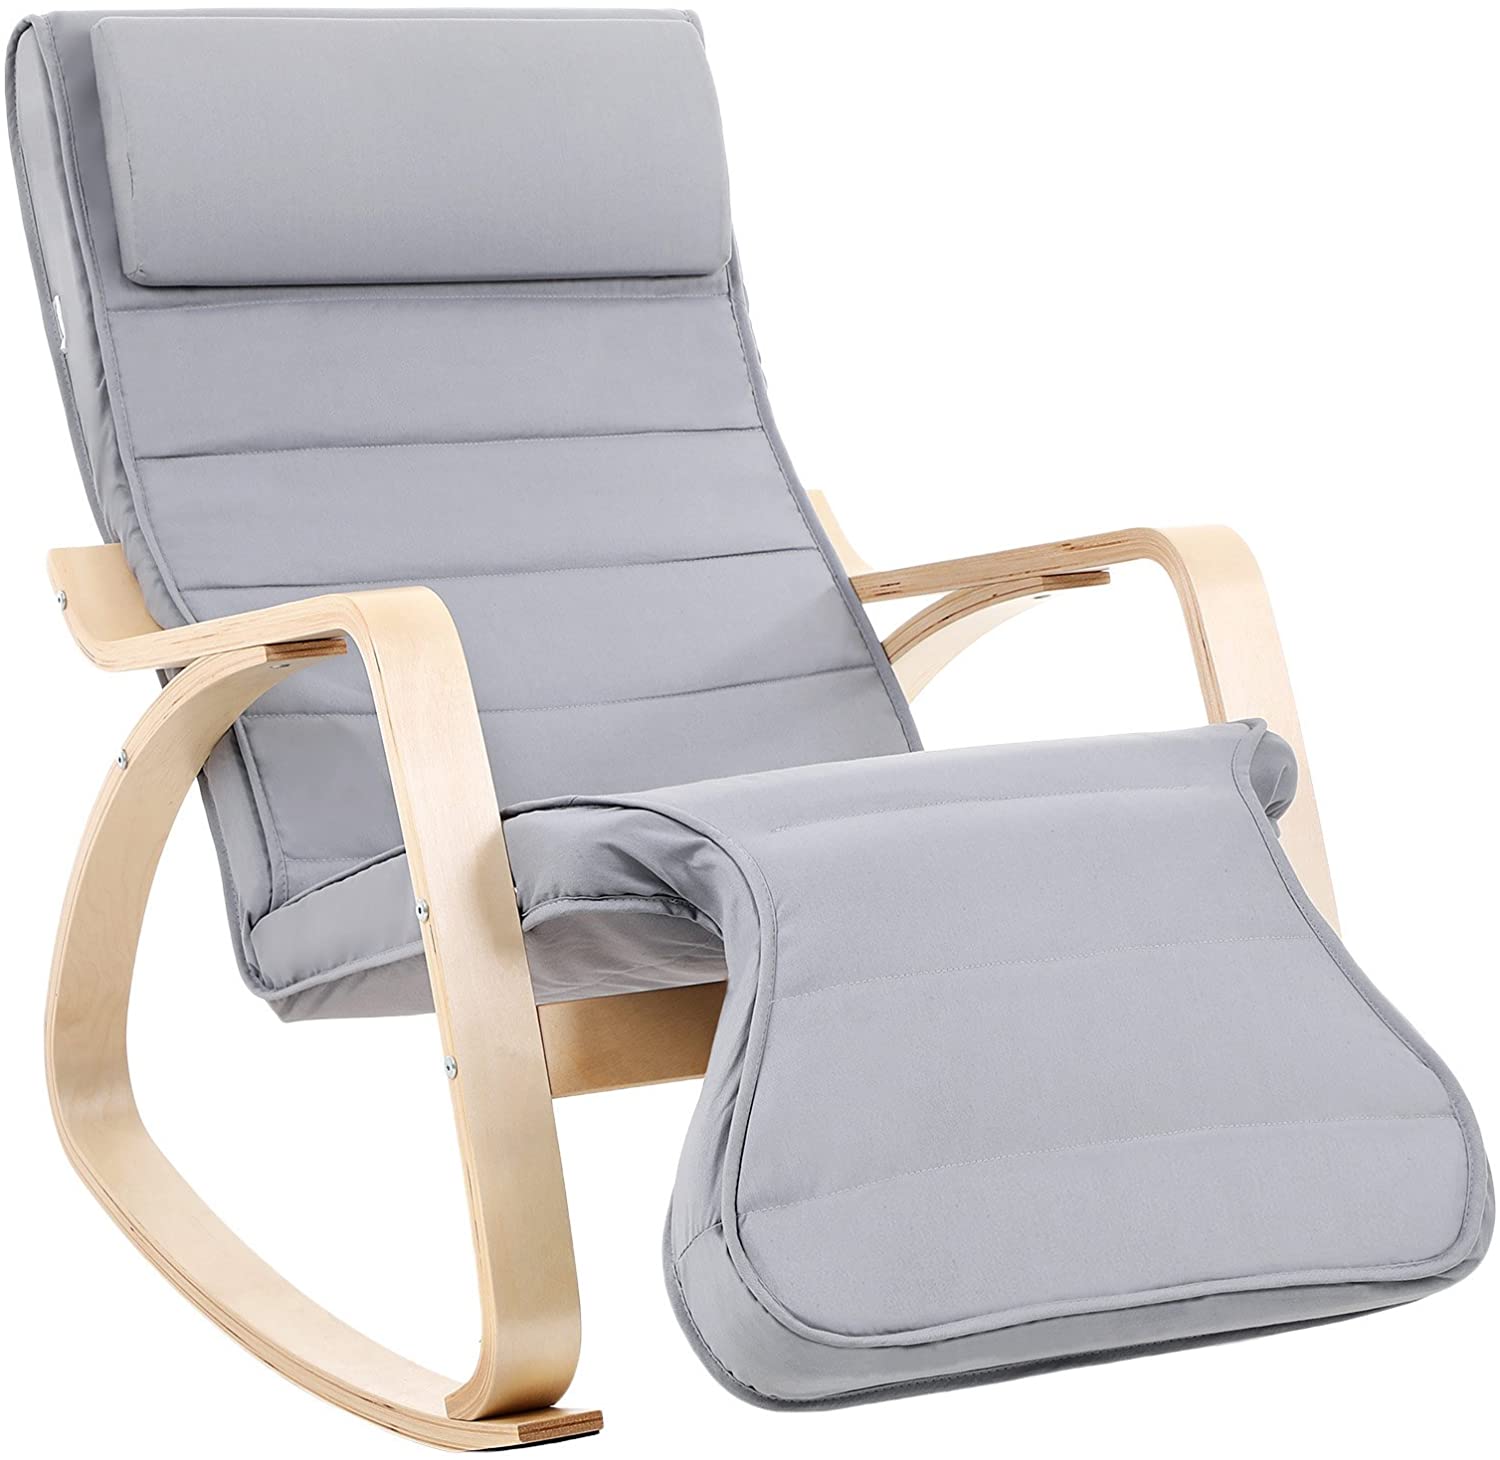 Hintaszék, relaxációs szék, 5 irányban állítható lábtartó, terhelhetőség 150 kg-ig